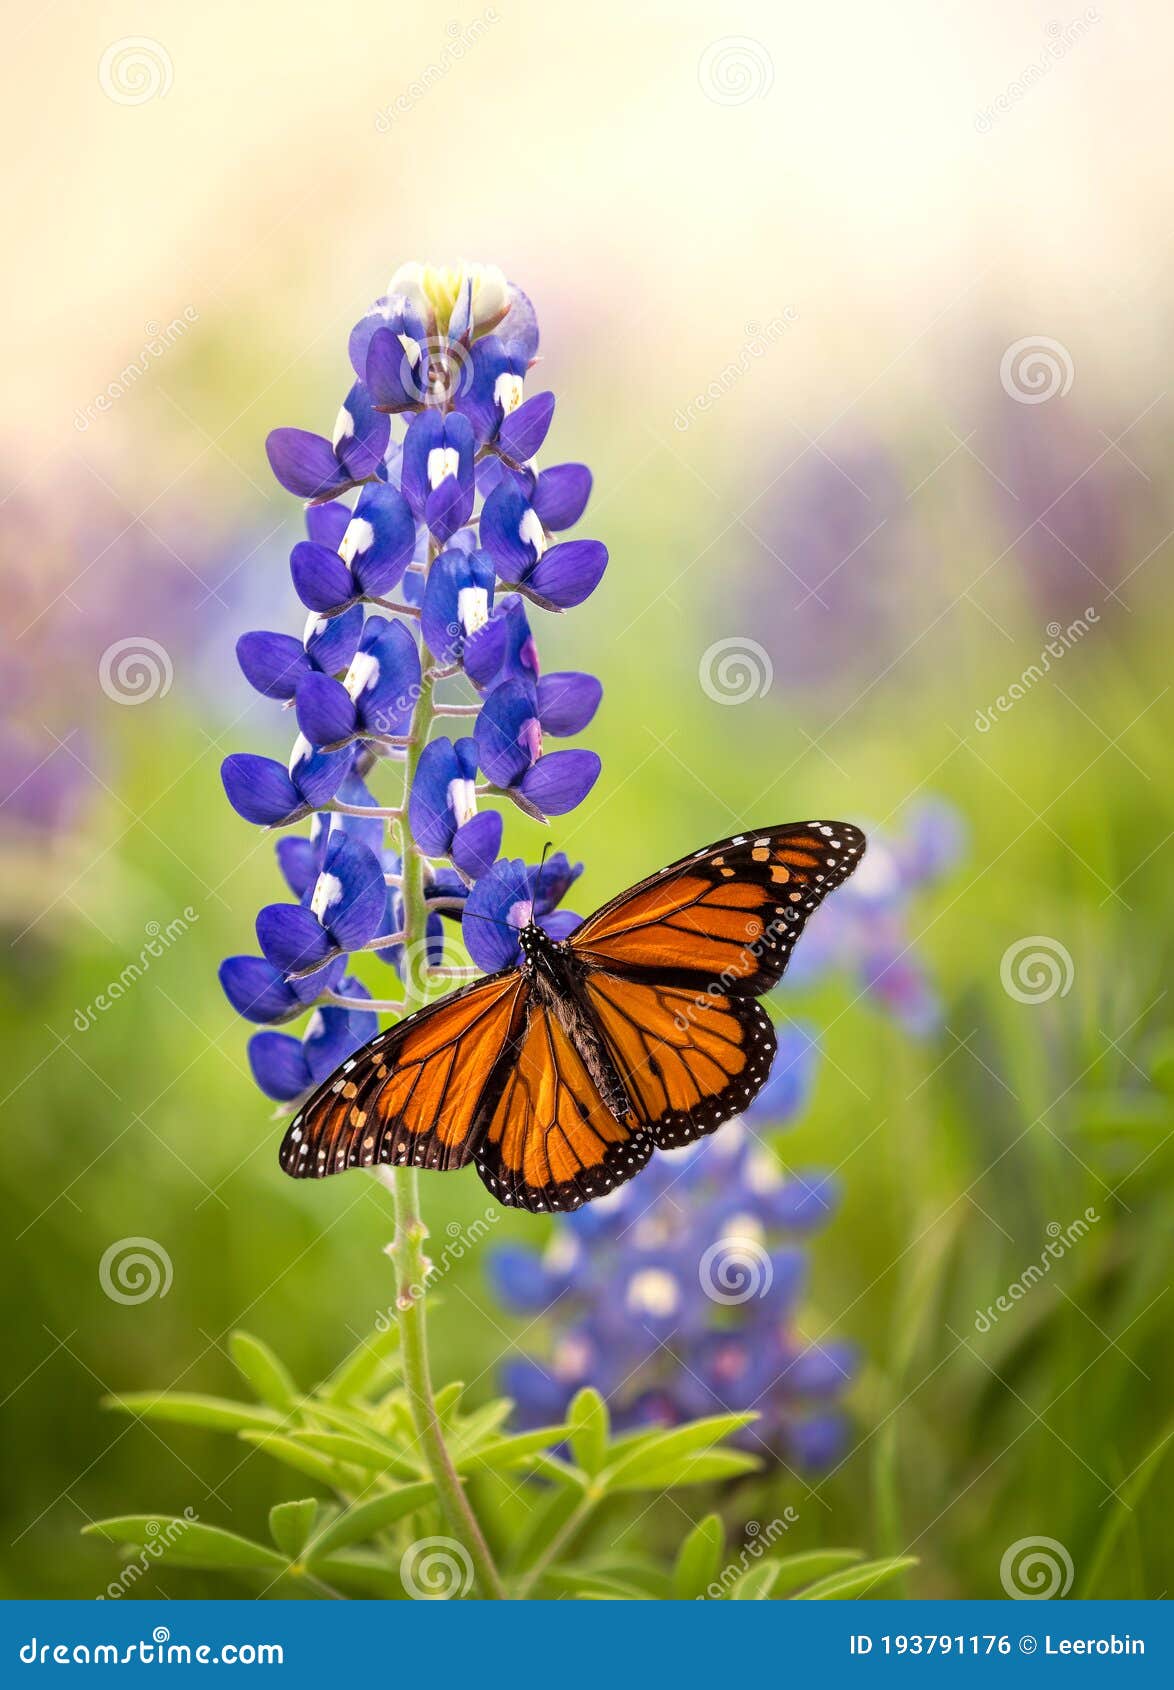 monarch butterfly on texas bluebonnet flower